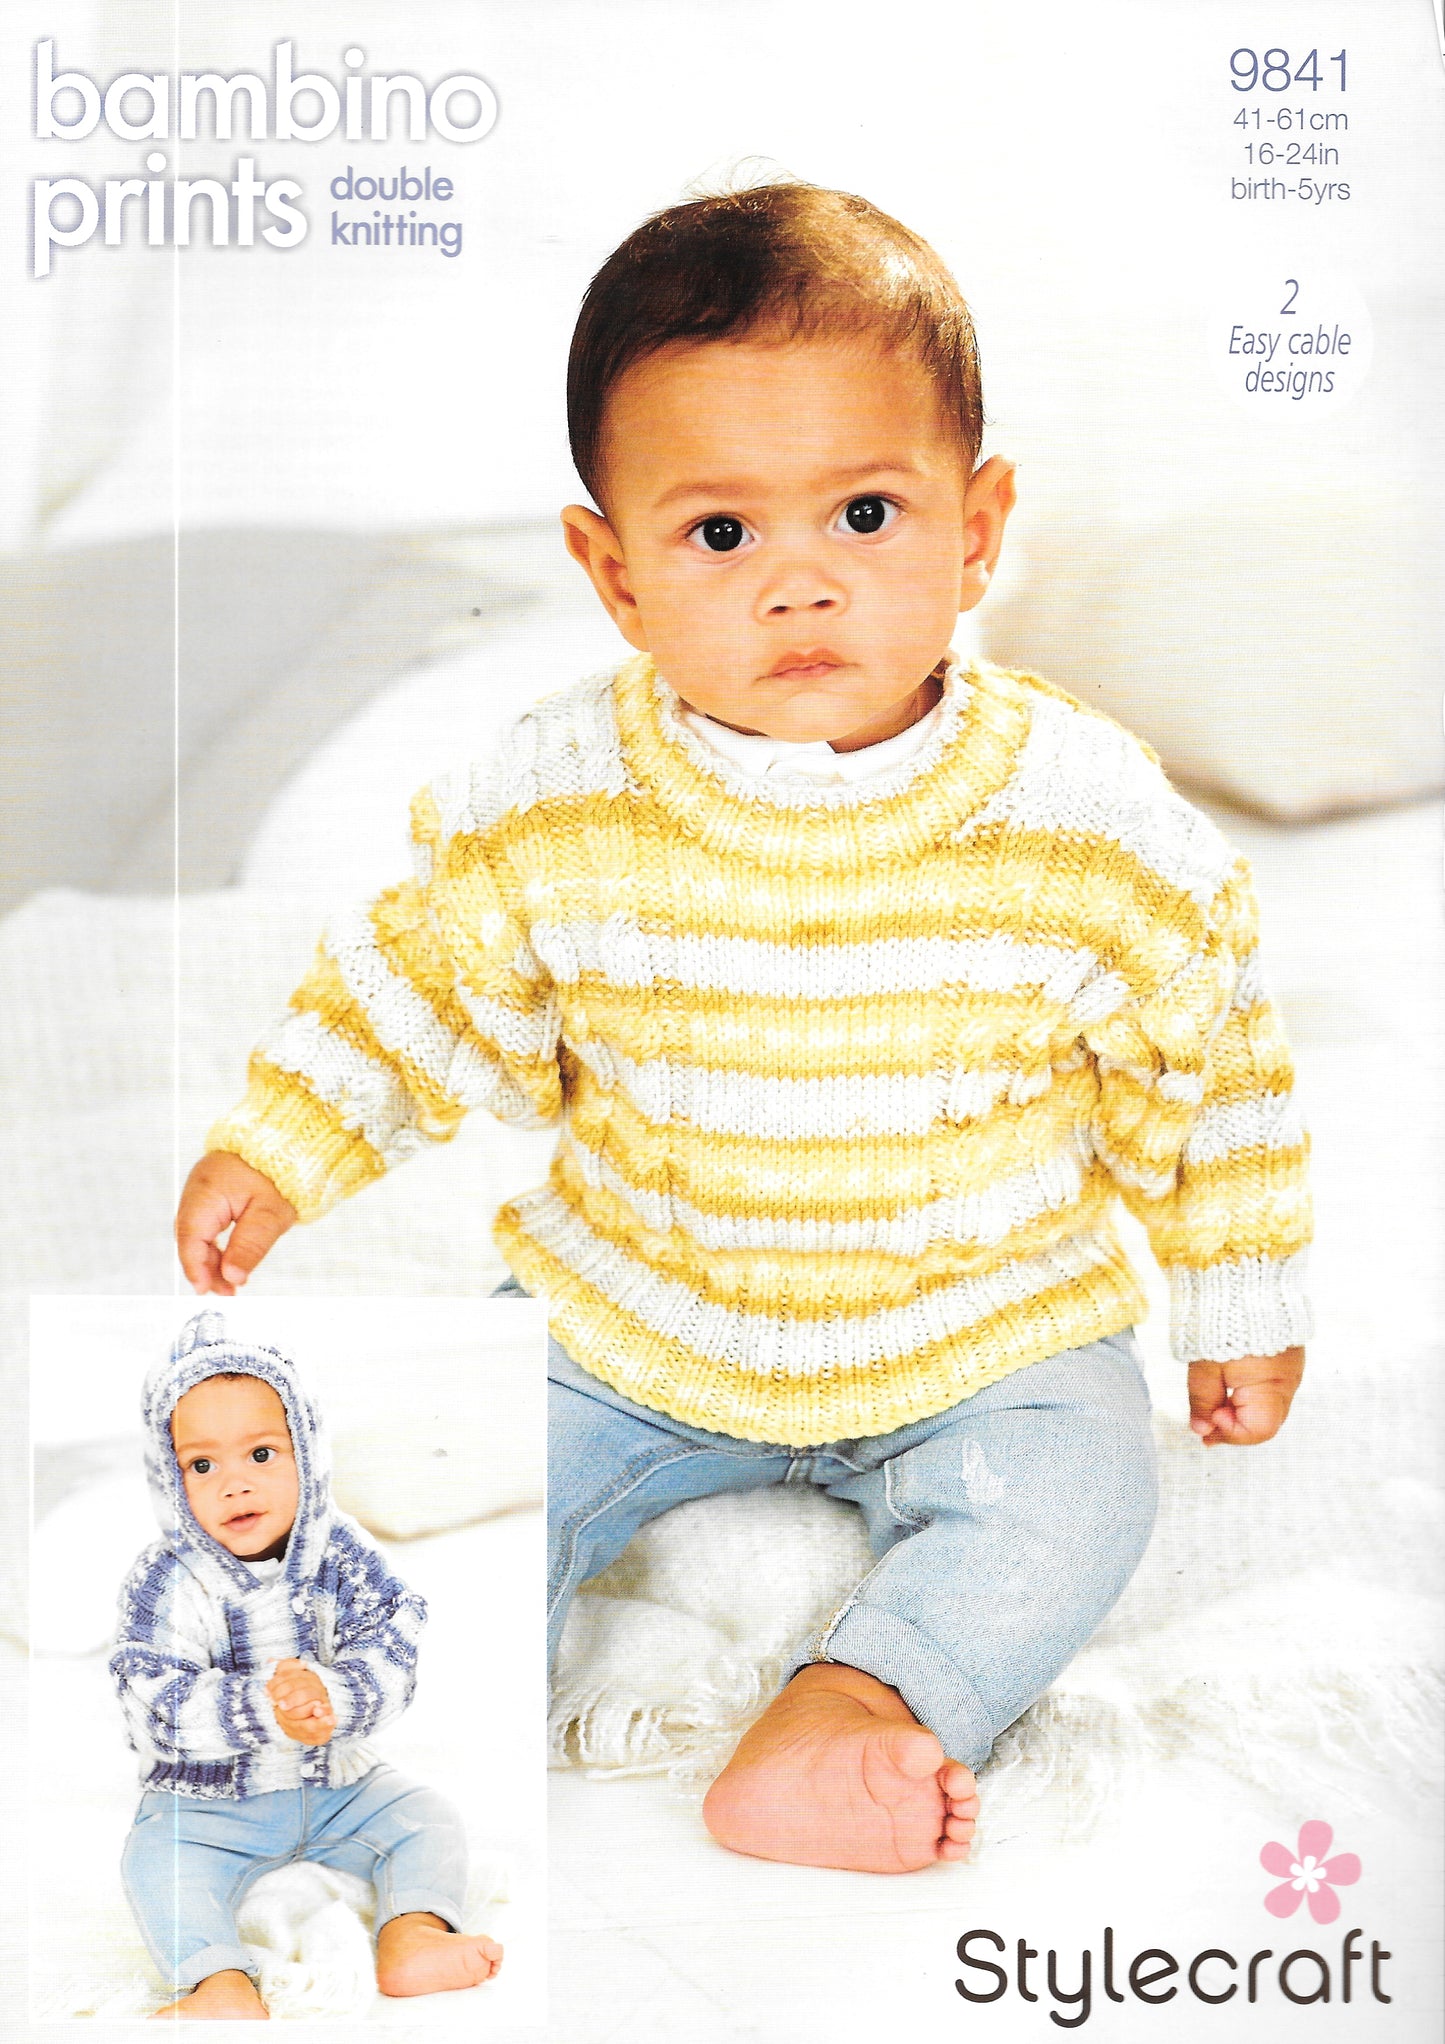 9841 Stylecraft knitting pattern. Child's Jacket/Sweater. Double Knitting